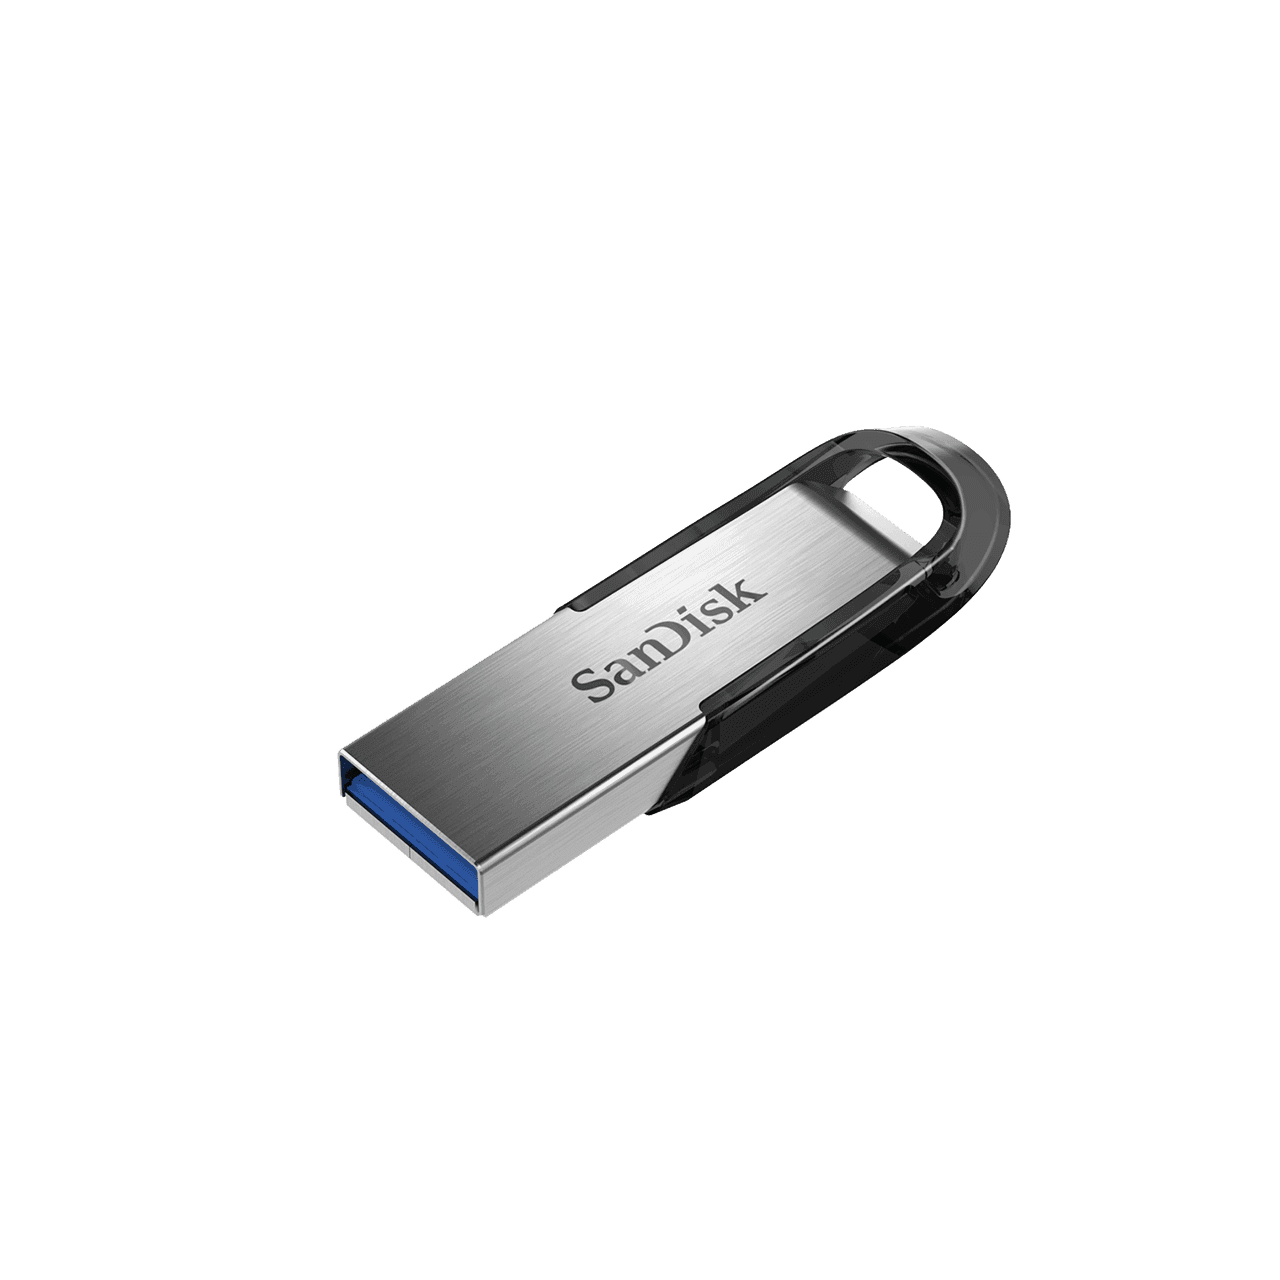 ULTRA FLAIR USB3.0 FLASH DRIVE 256GB